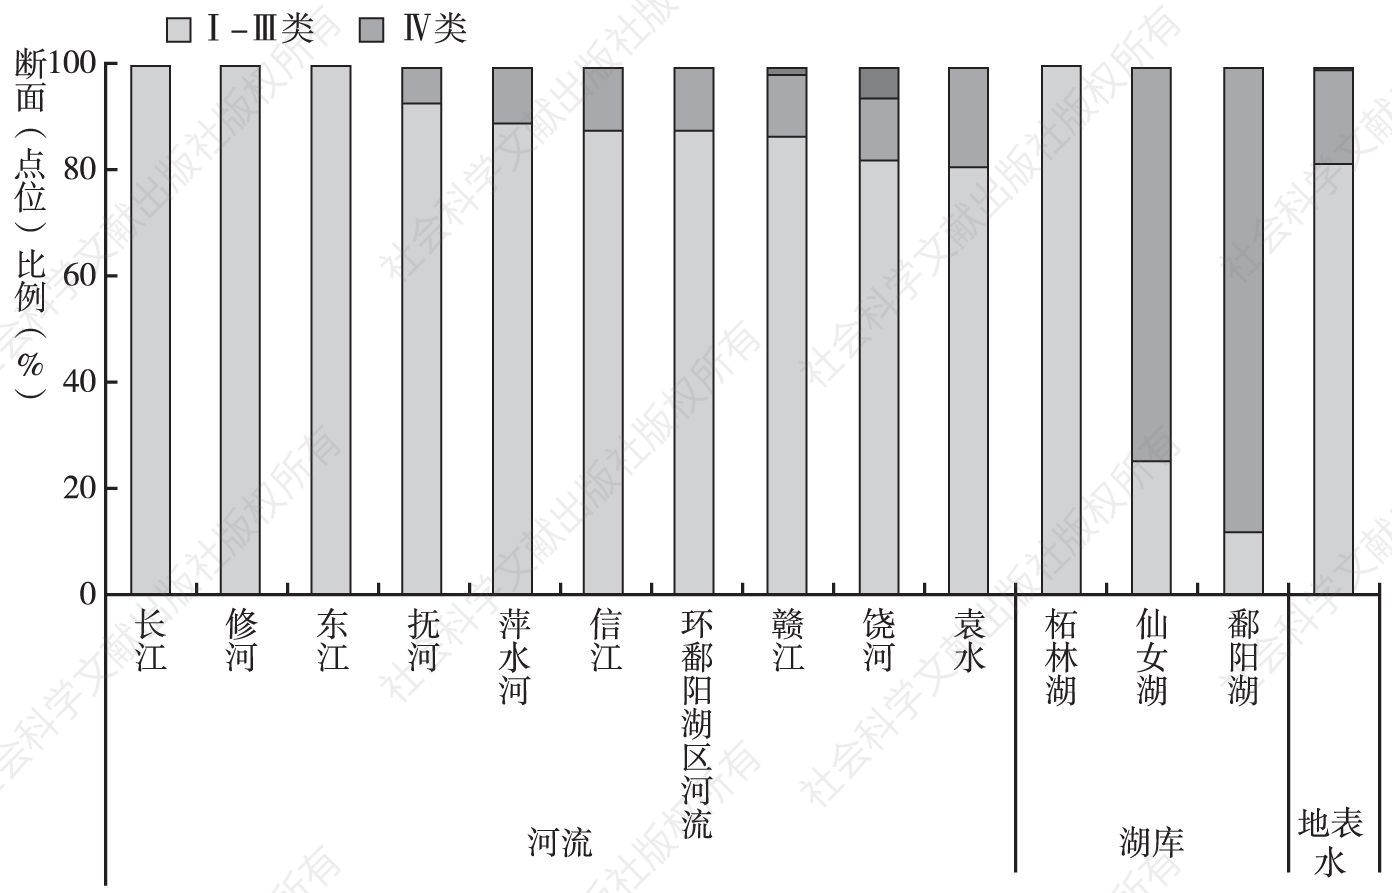 图2 2016年江西省主要河流和湖库水质类别比例